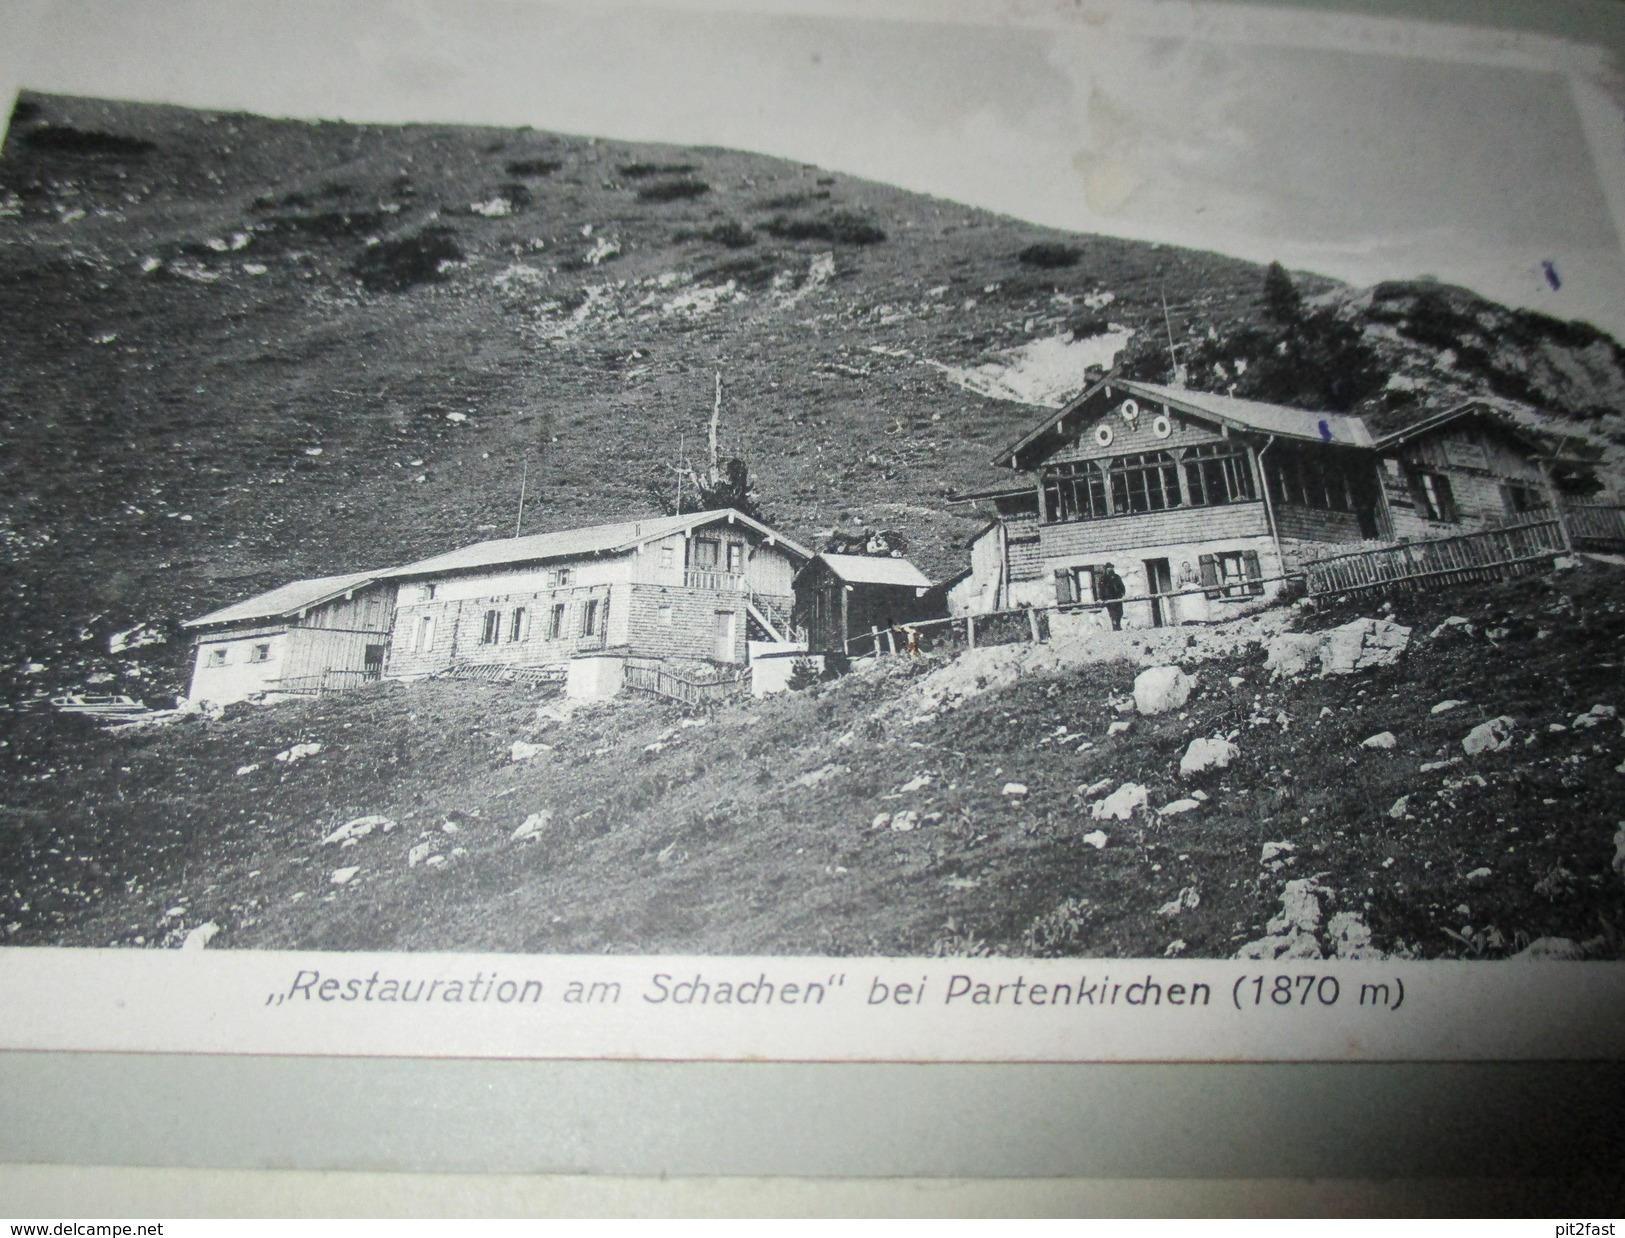 13x alte Ansichtskarten 1921 , Mittenwald , Lautersee , Kranzberg , Leutasch , Karwendelhütte , Albumseite , Album , AK